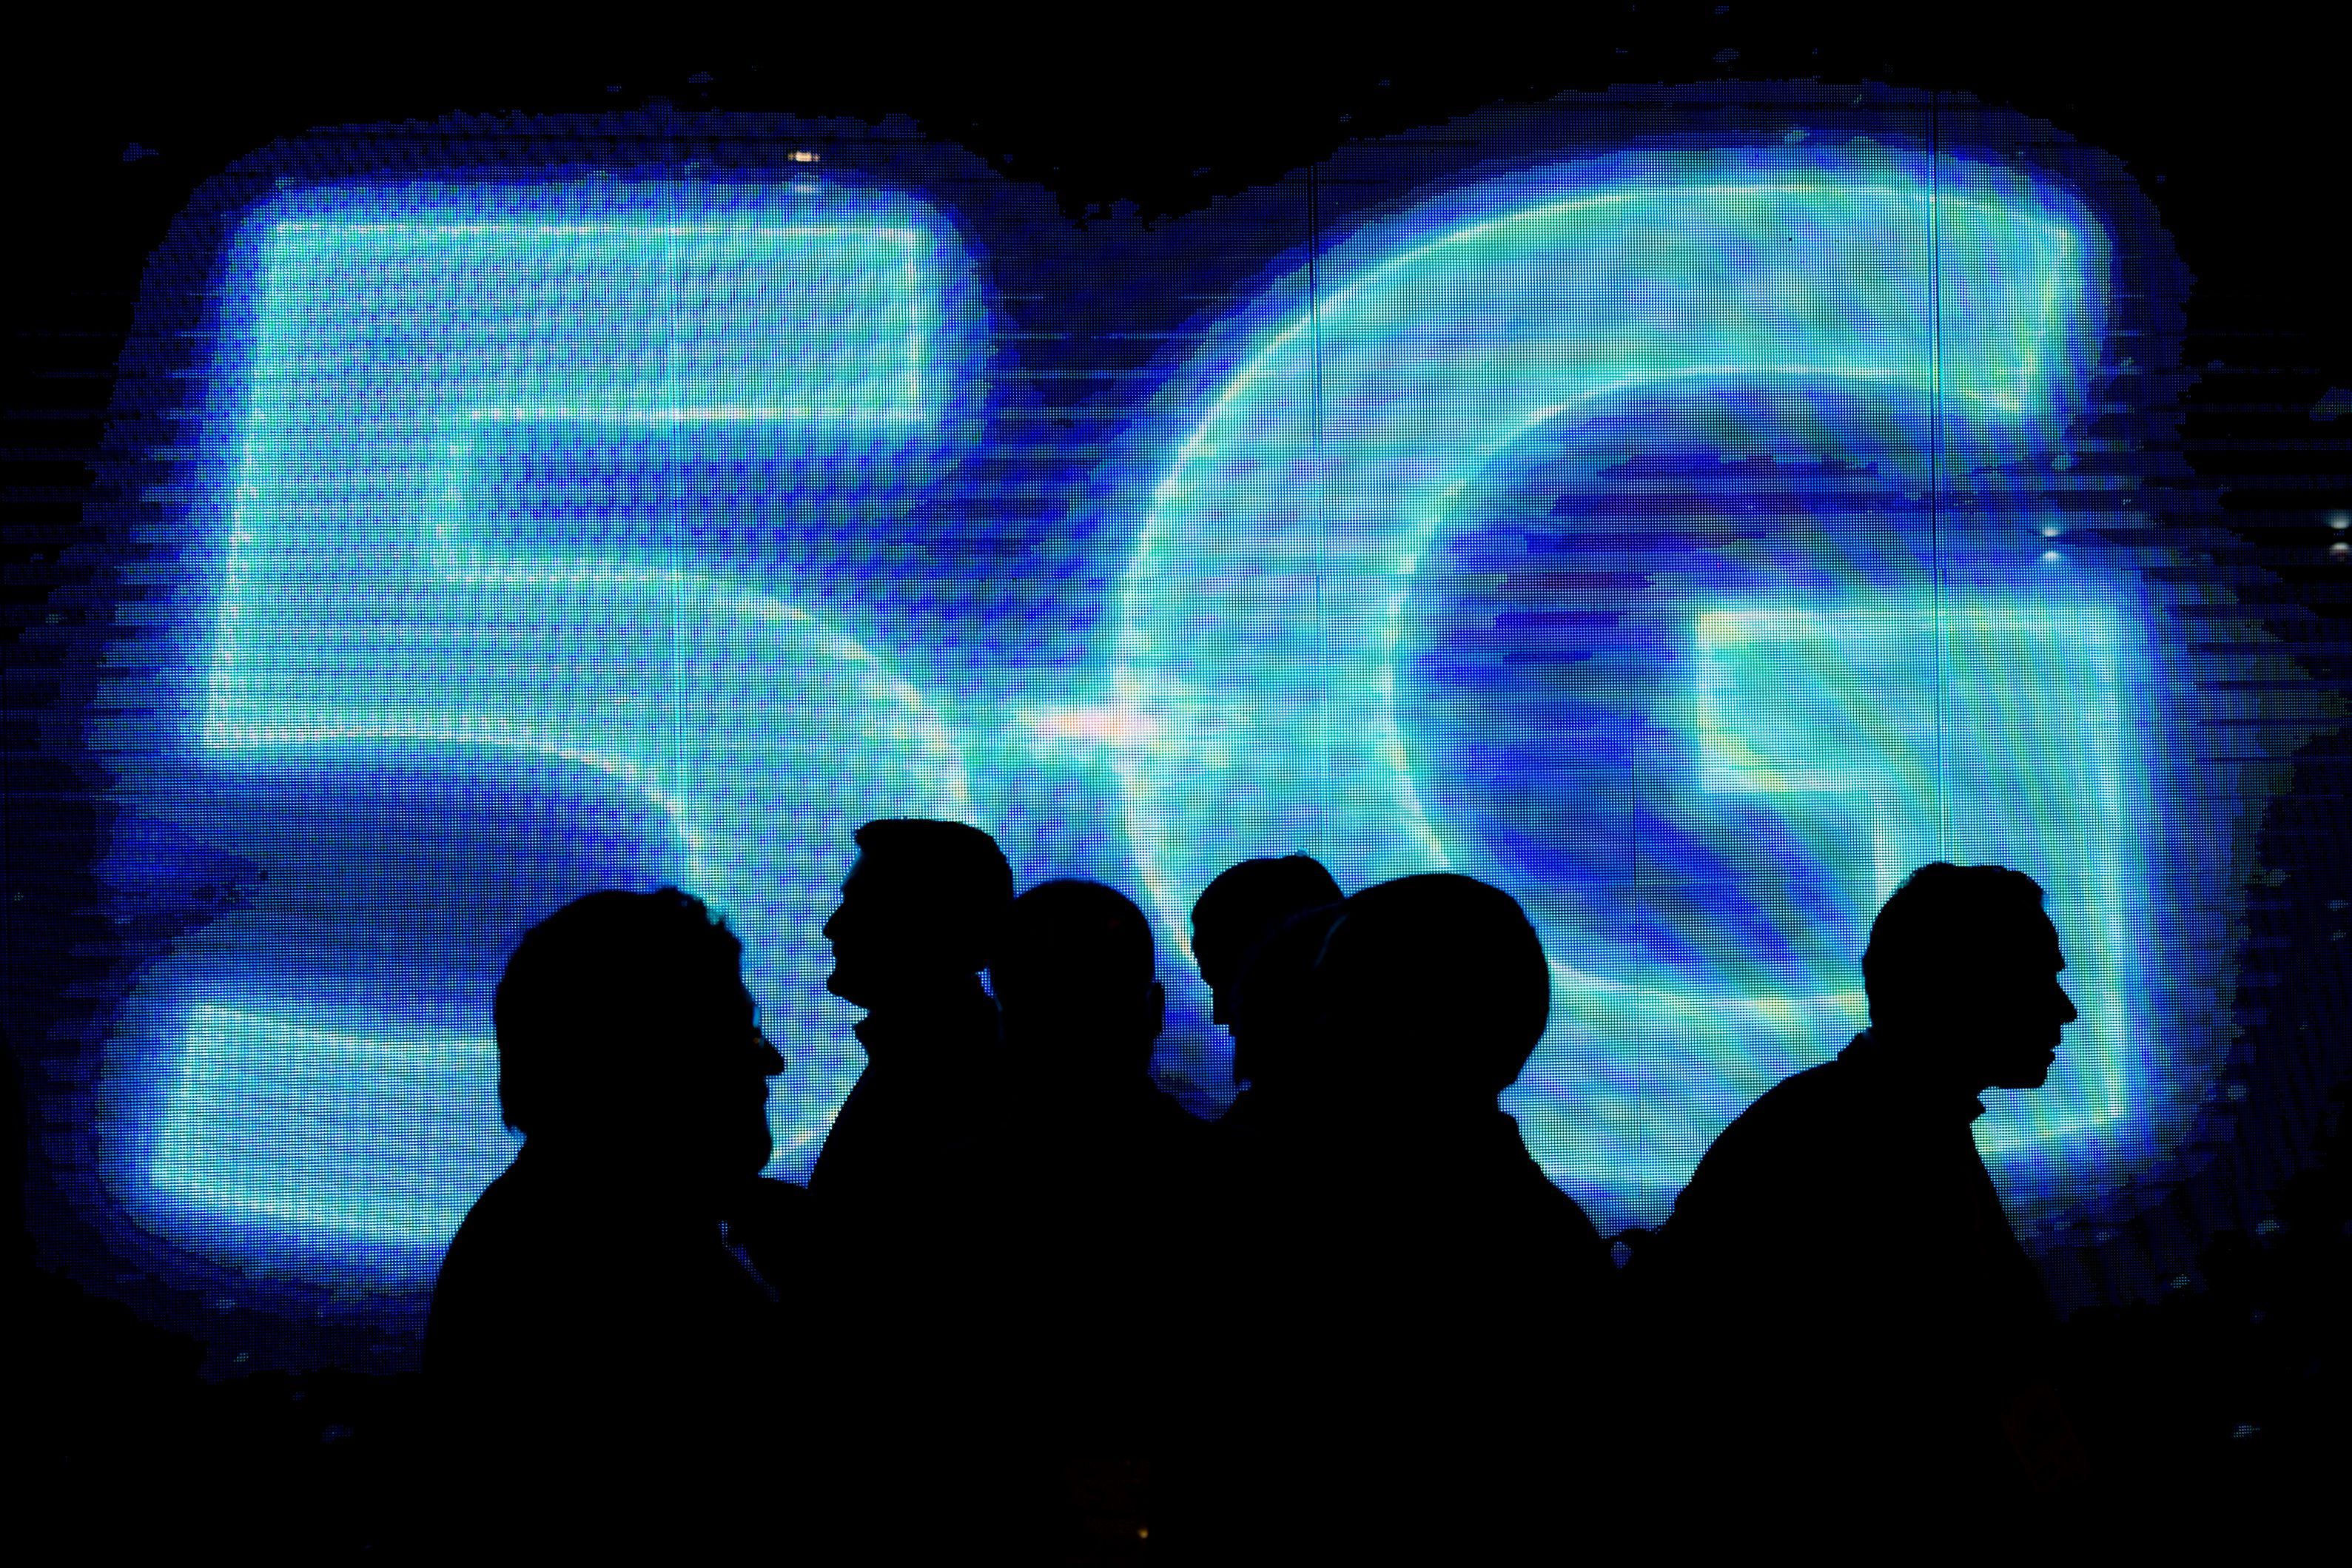   5G lovar att förändra internet som vi känner det... men är det säkert?